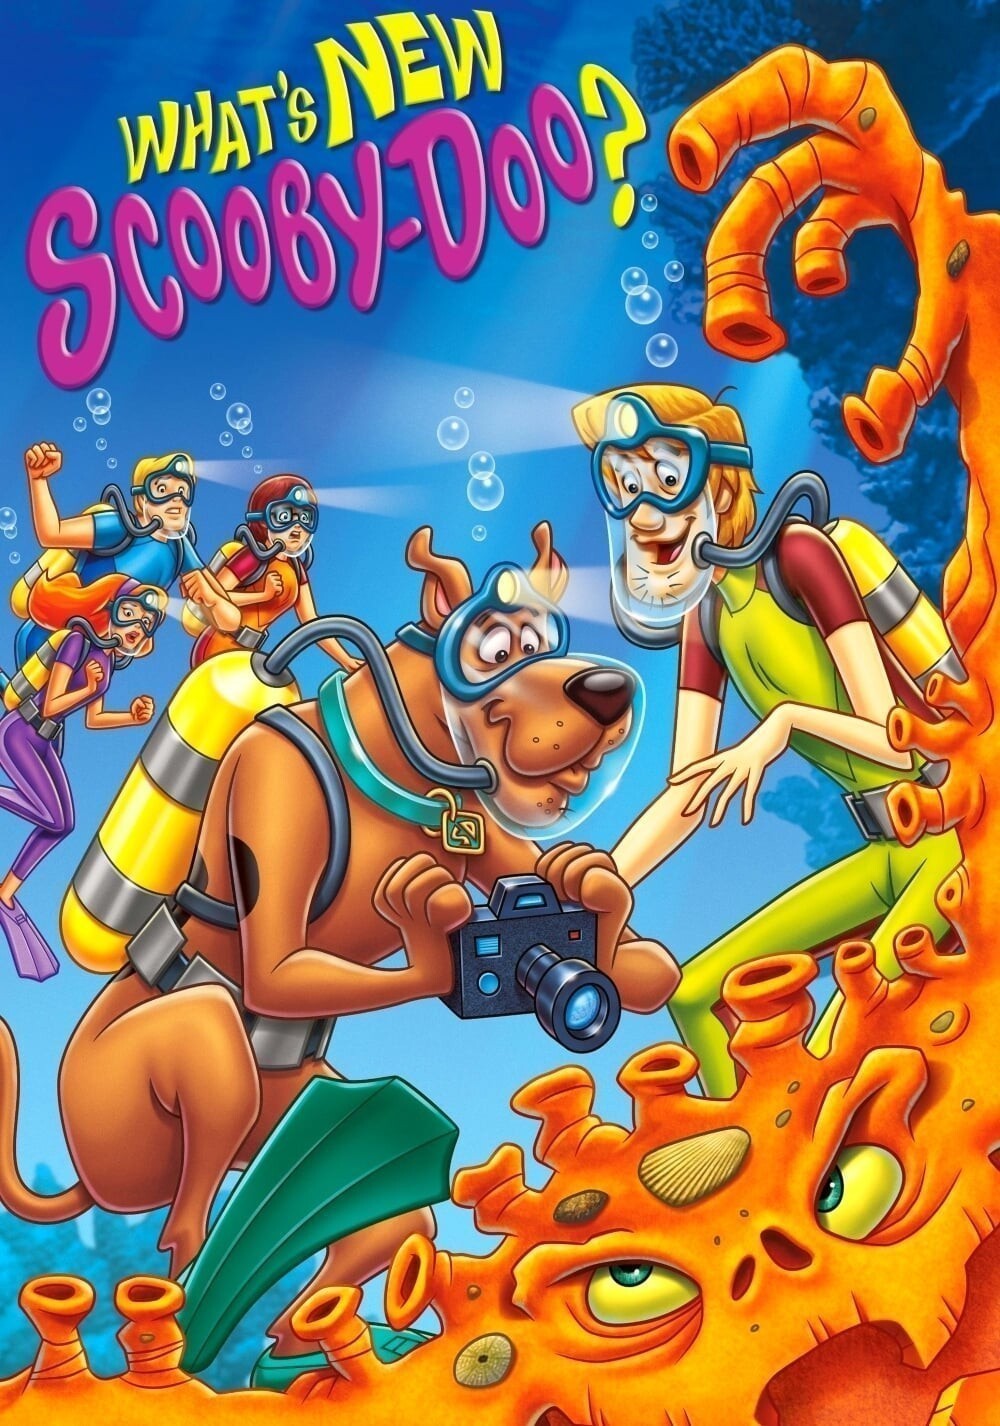 Co nowego u Scooby'ego?